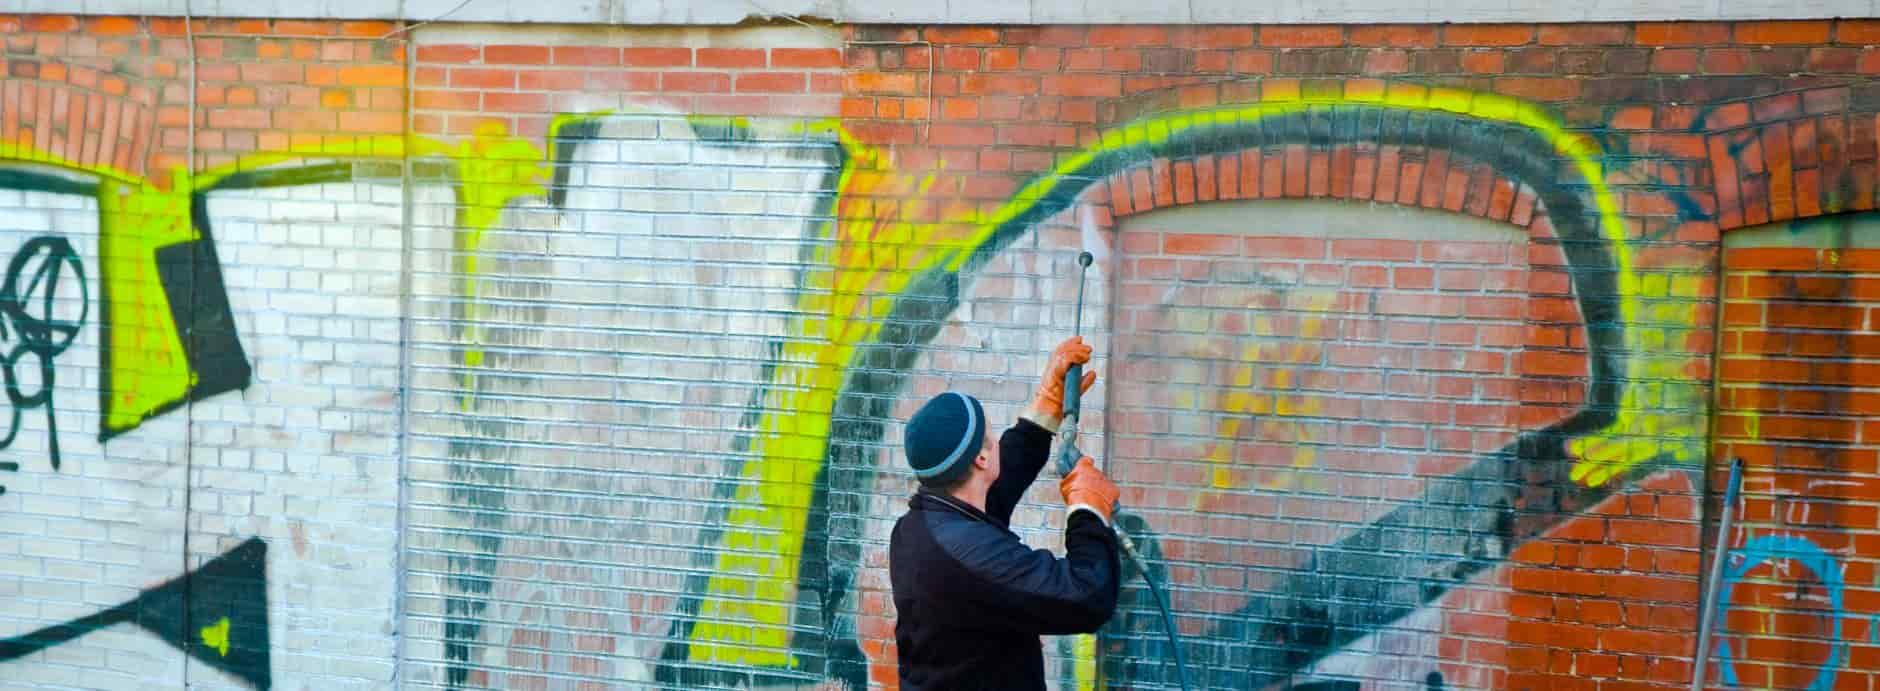 Graffiti Removal in Lingdale